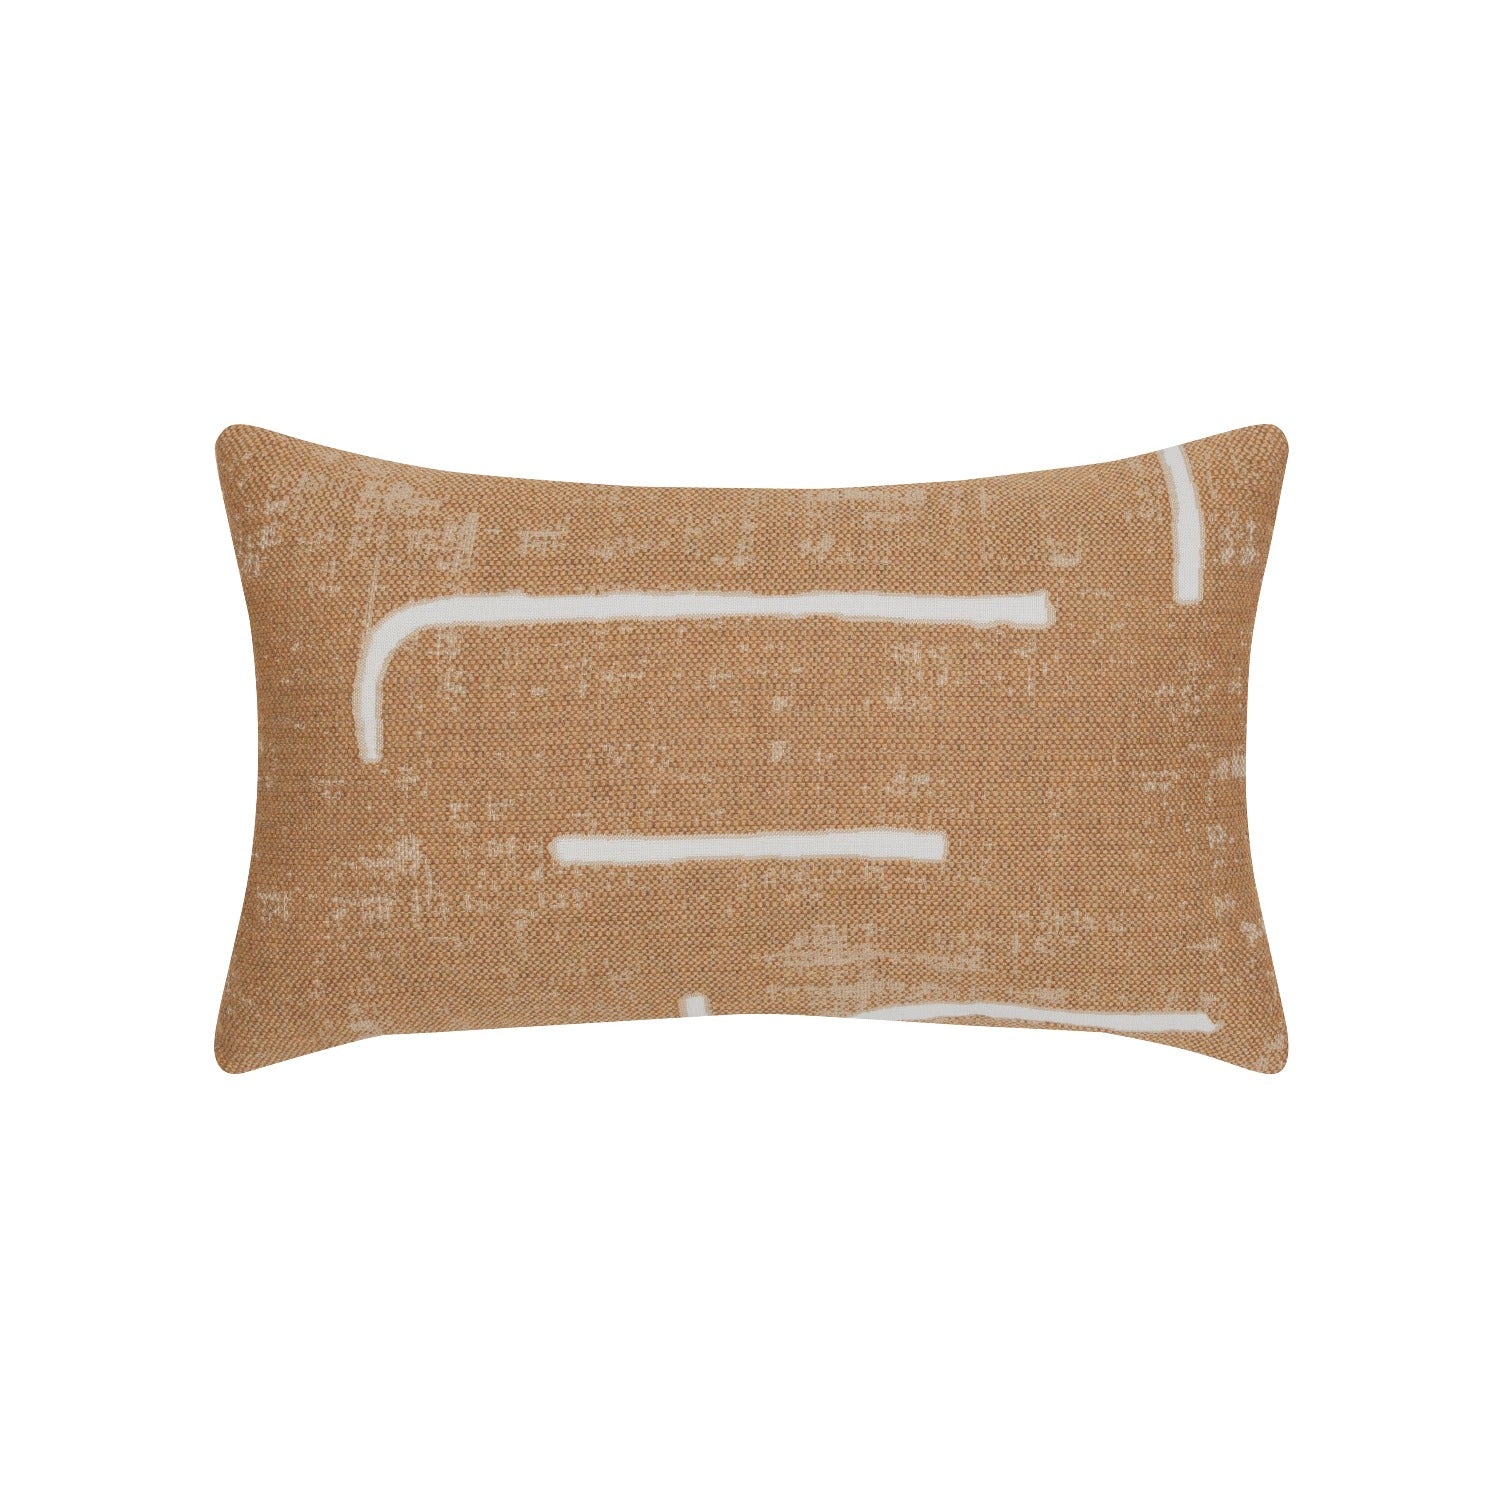 Elaine Smith Instinct Caramel Lumbar Pillow Throw Pillows 12041458